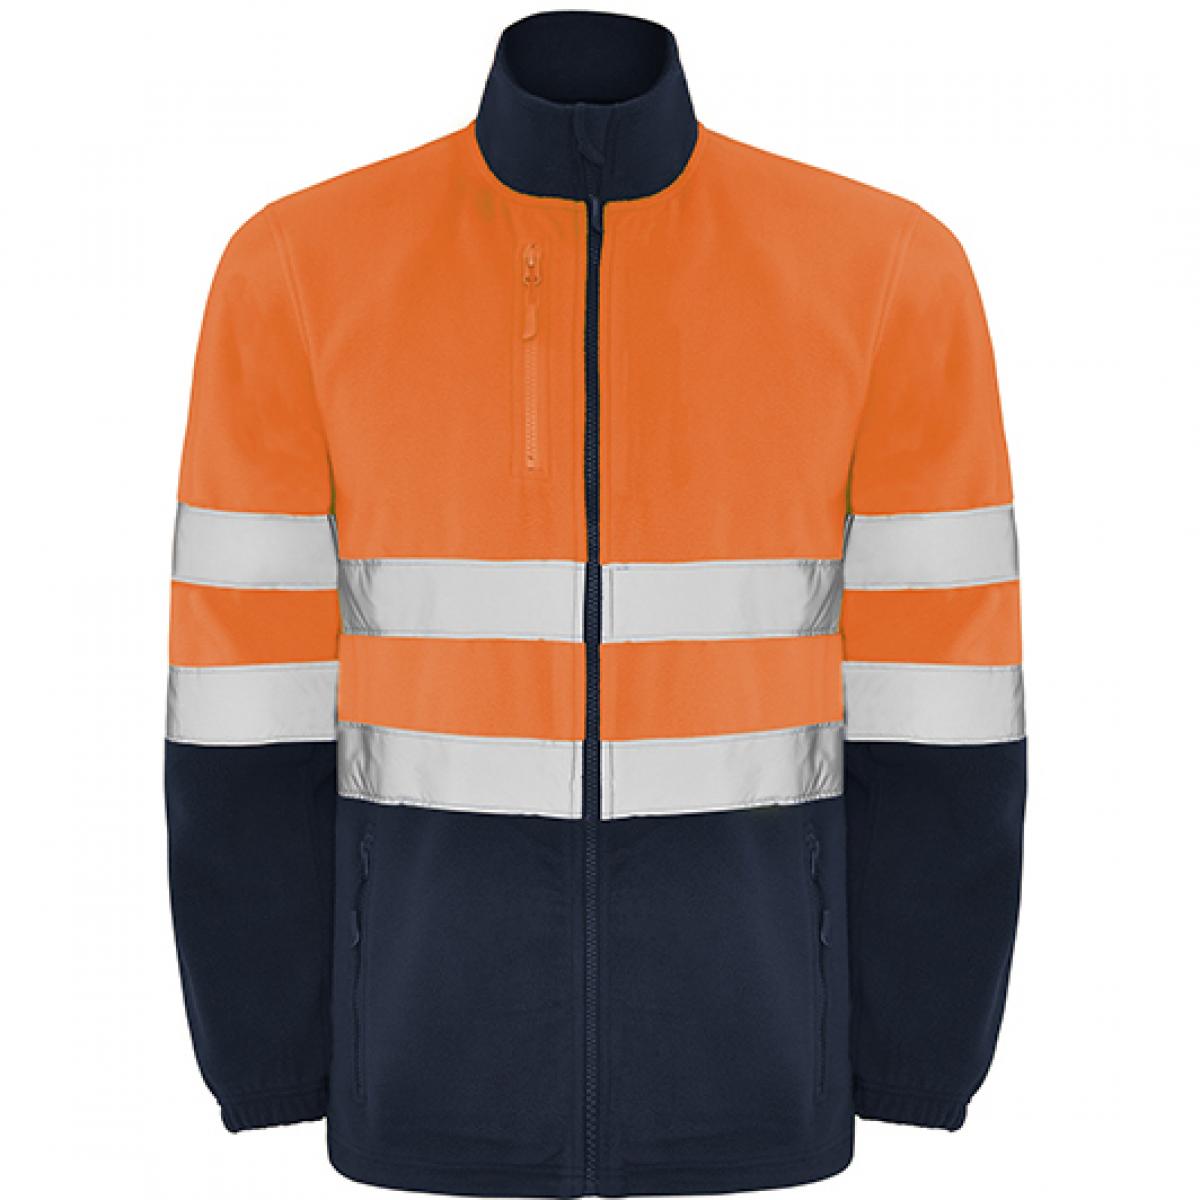 Hersteller: Roly Workwear Herstellernummer: HV9305 Artikelbezeichnung: Altair Hi-Viz Fleece Jacke mit Reflektionsstreifen Farbe: Navy Blue 55/Fluor Orange 223